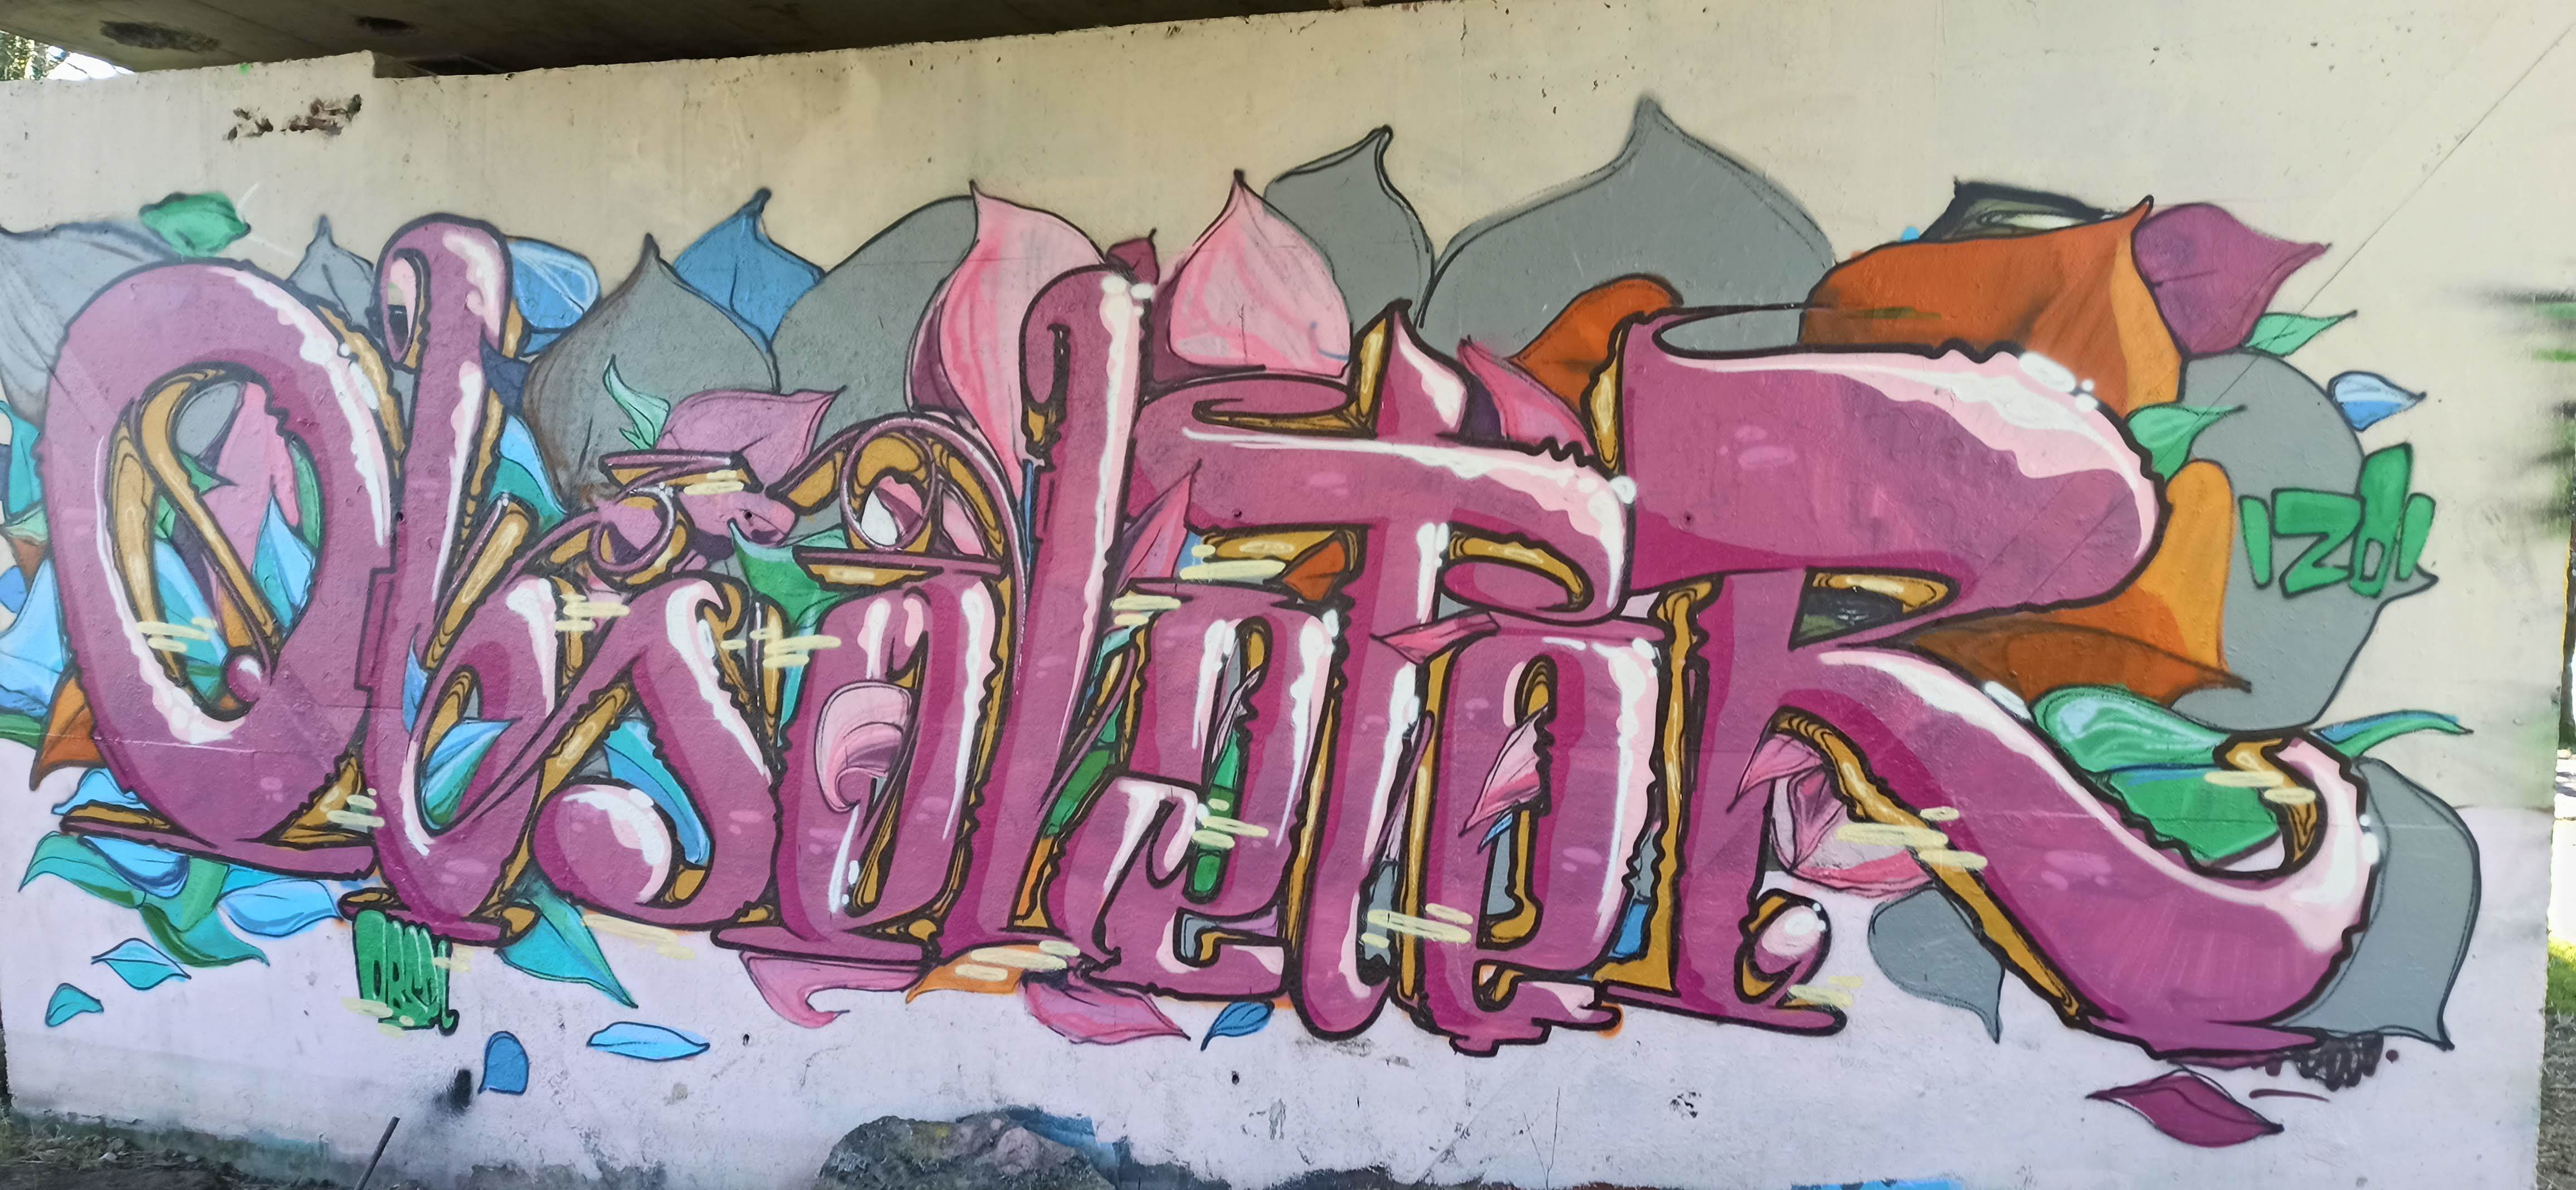 Graffiti 4702  captured by Rabot in Rezé France